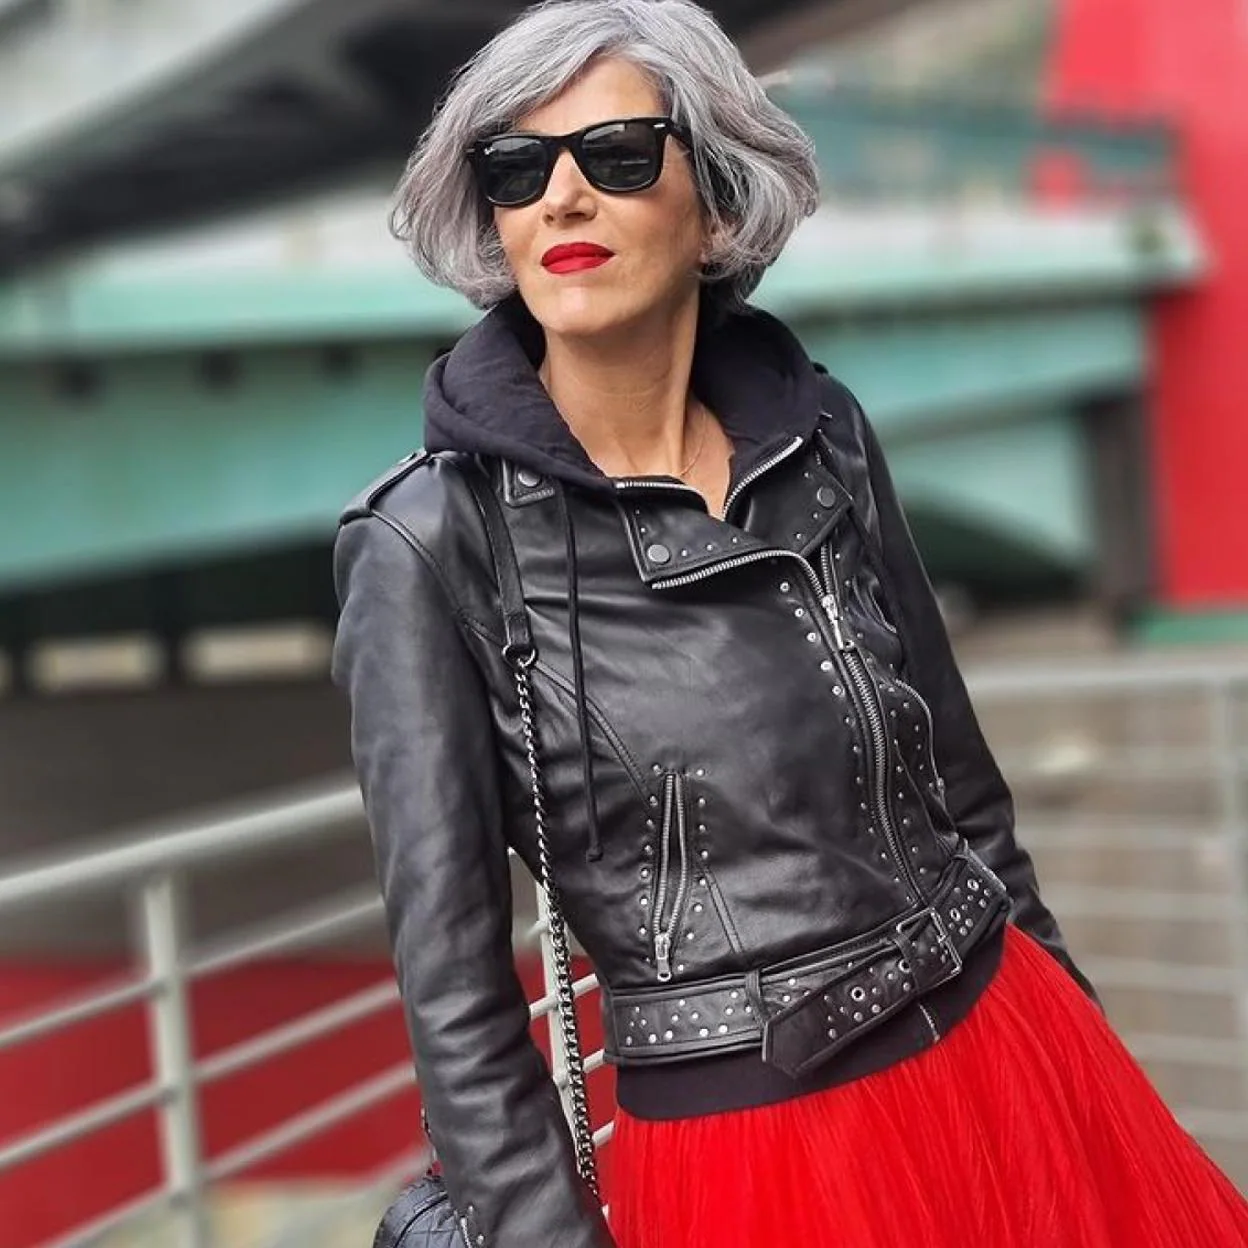 La falda de tul roja de agotada y una chaqueta negra: el look low cost rejuvenece a 50 y arrasa en | Mujer Hoy